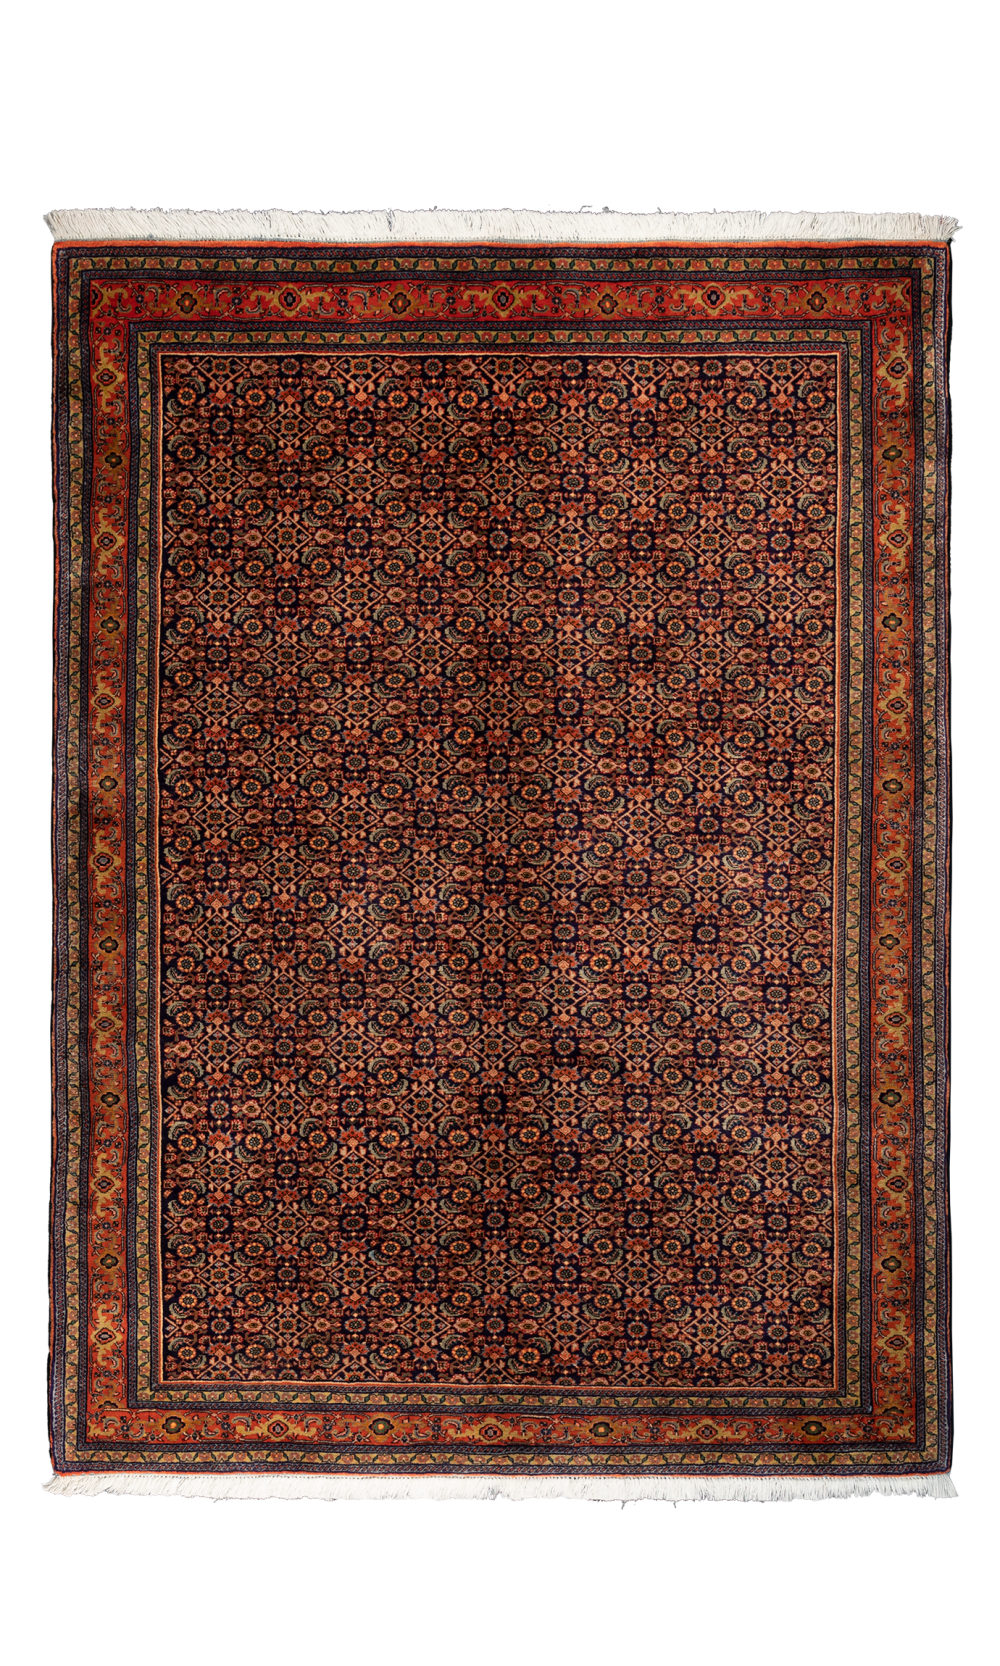 Bijar - 163x118cm Used Handmade Rug in Wool & brown color